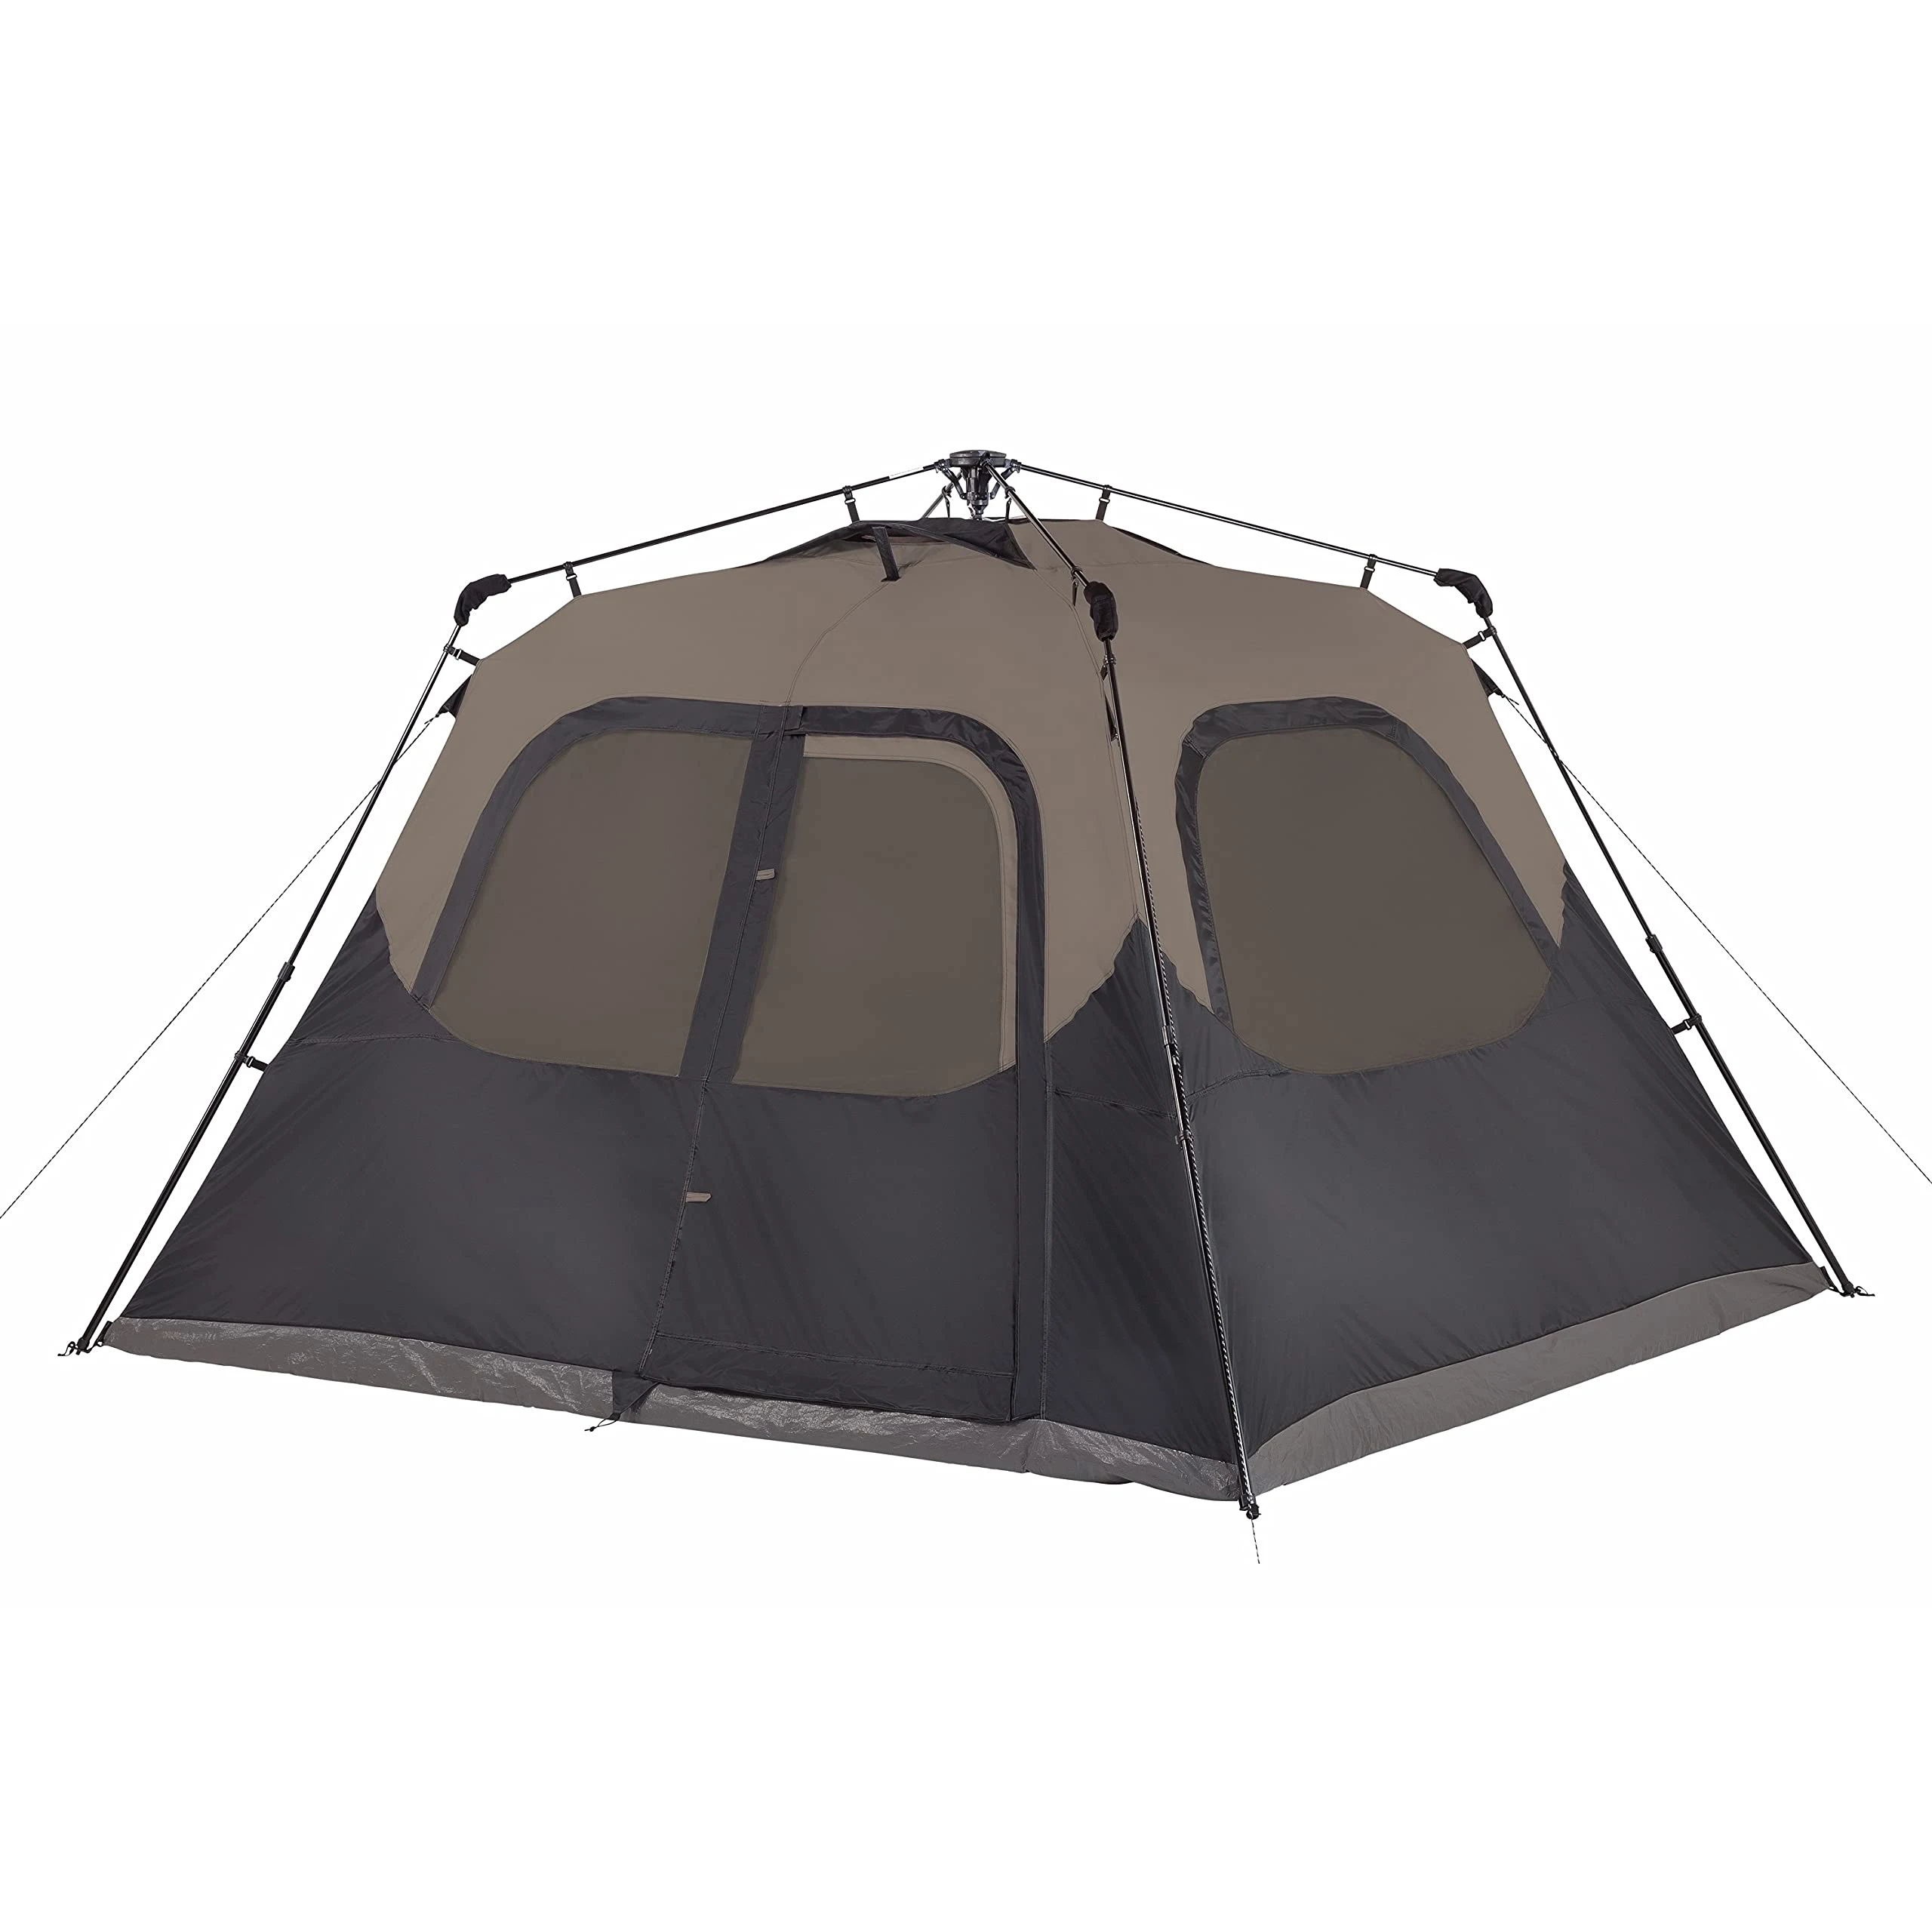 

Палатка с кабиной с мгновенной установкой за 60 секунд, палатки для кемпинга, тенты для пешего туризма, кемпинга и походов (в наличии в США)